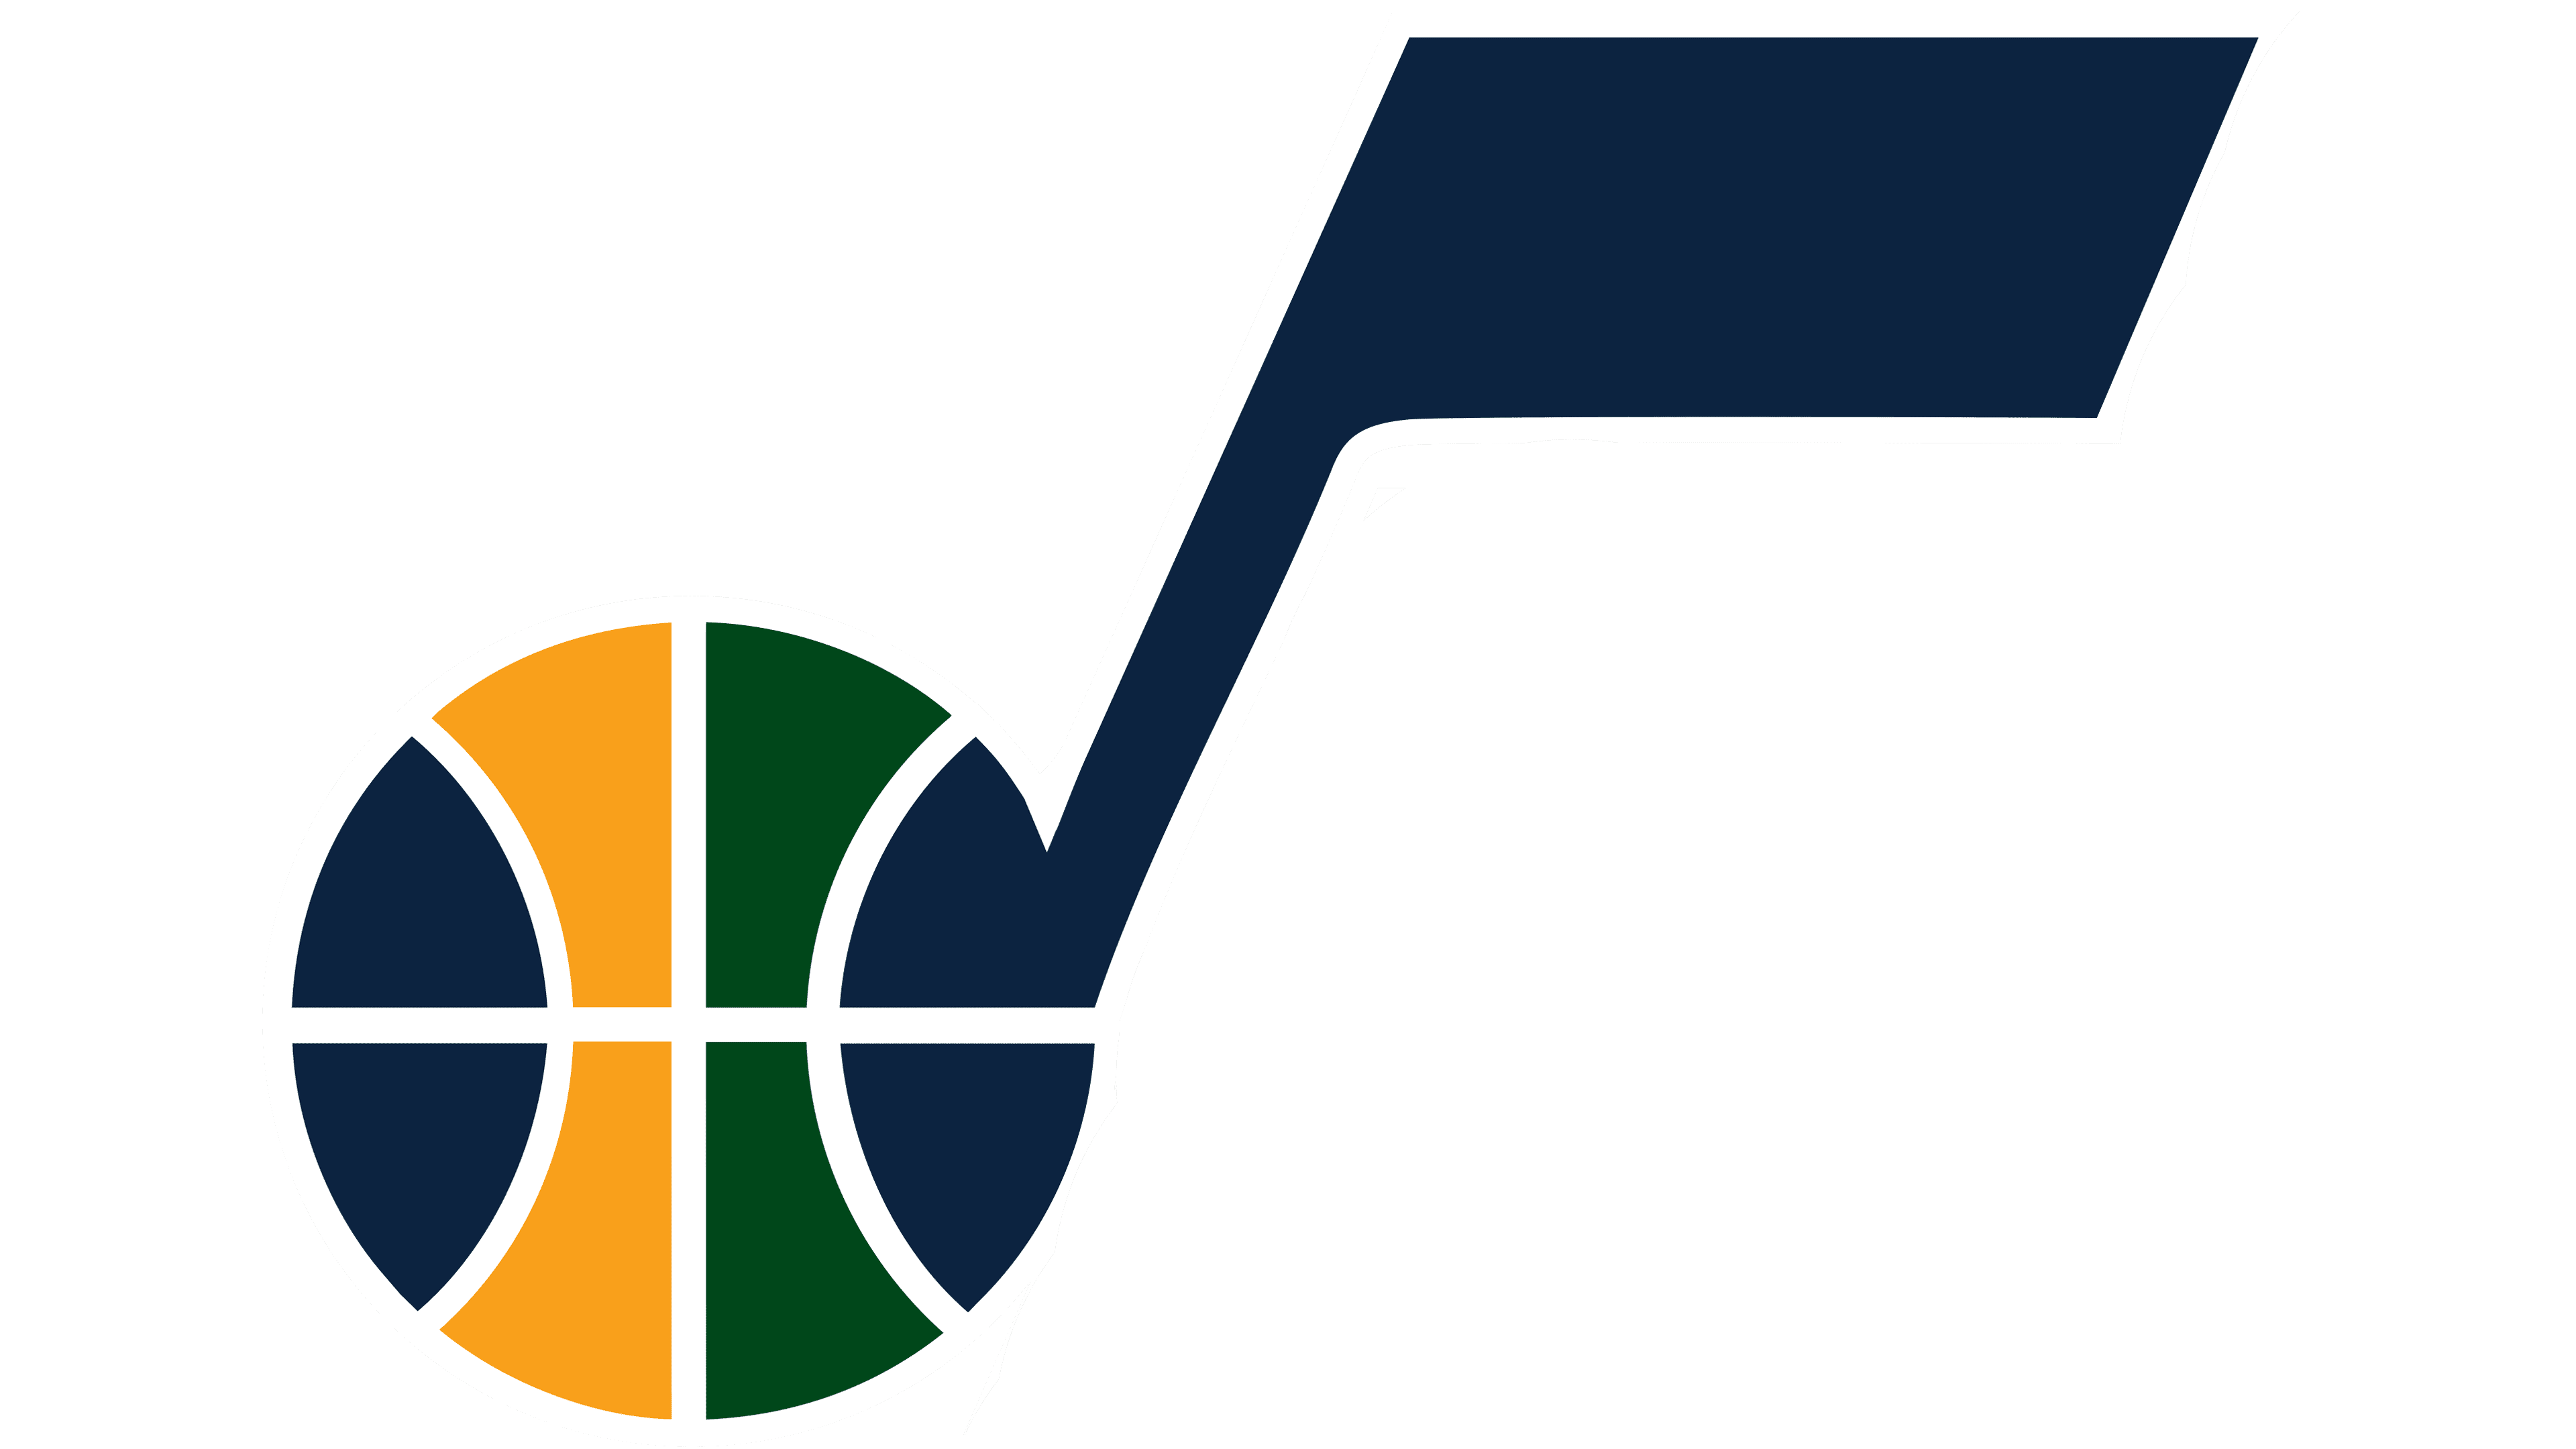 Utah Jazz Dark Mode Logo